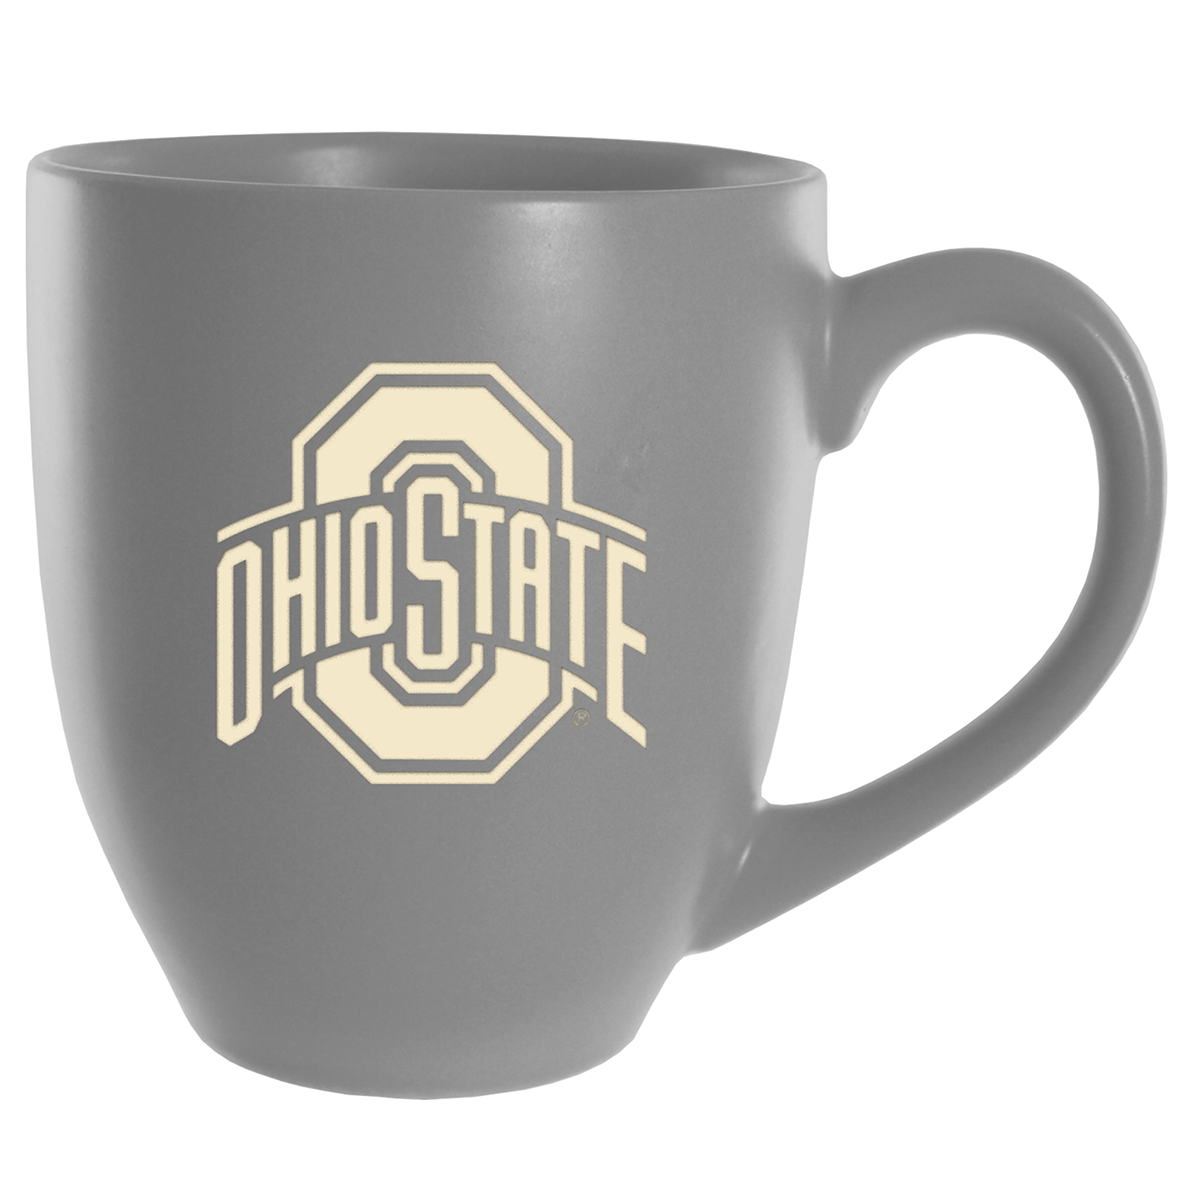 Ohio State University Bistro mug